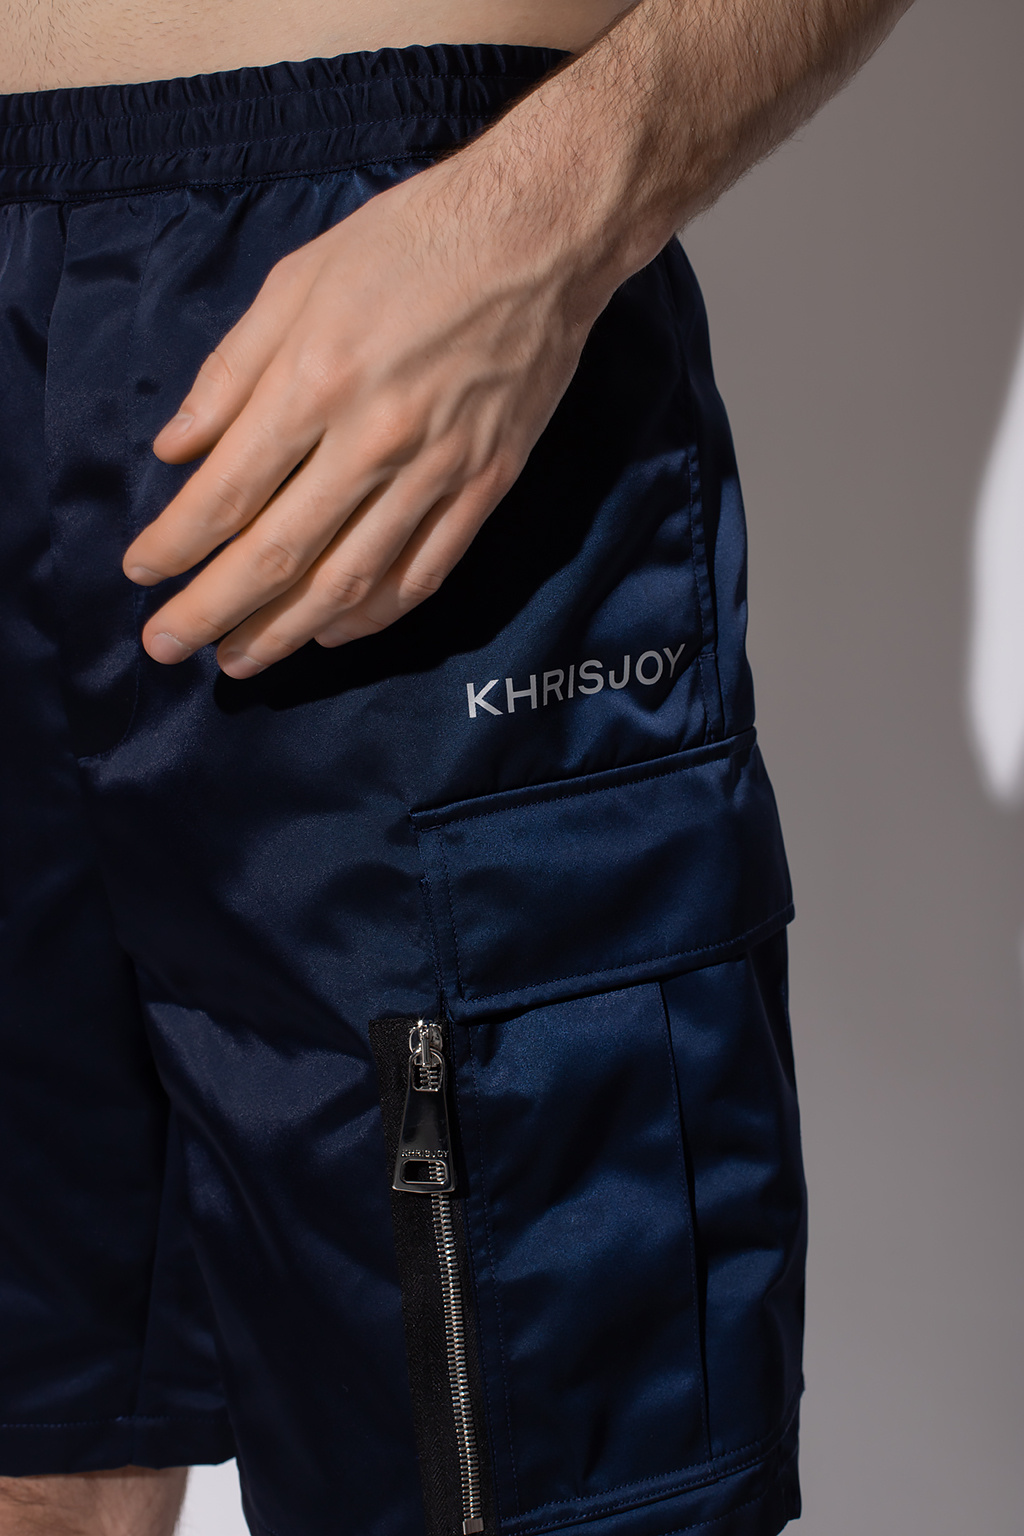 Khrisjoy shorts Influence with logo